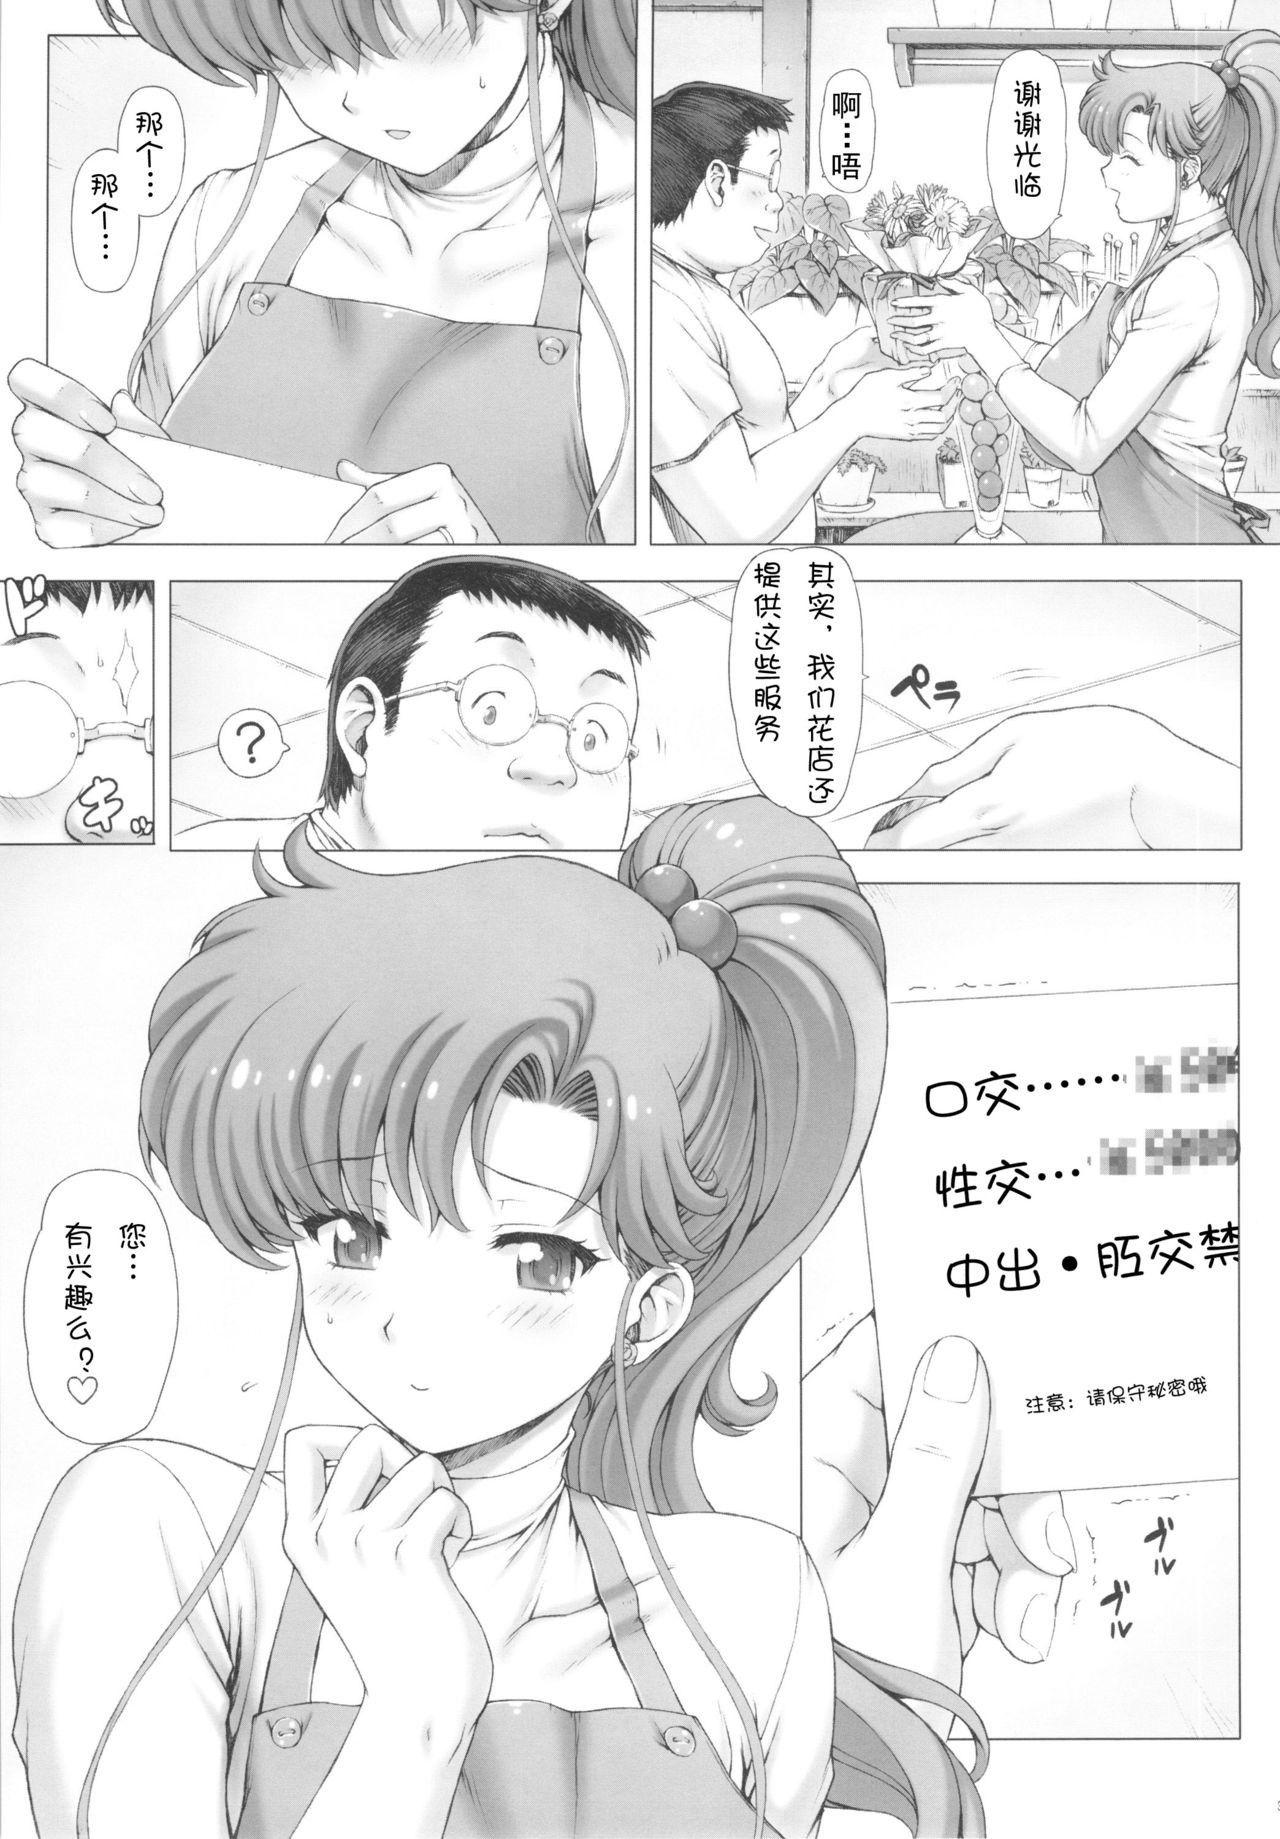 Inka + Omake Bon + Postcard hentai manga picture 4